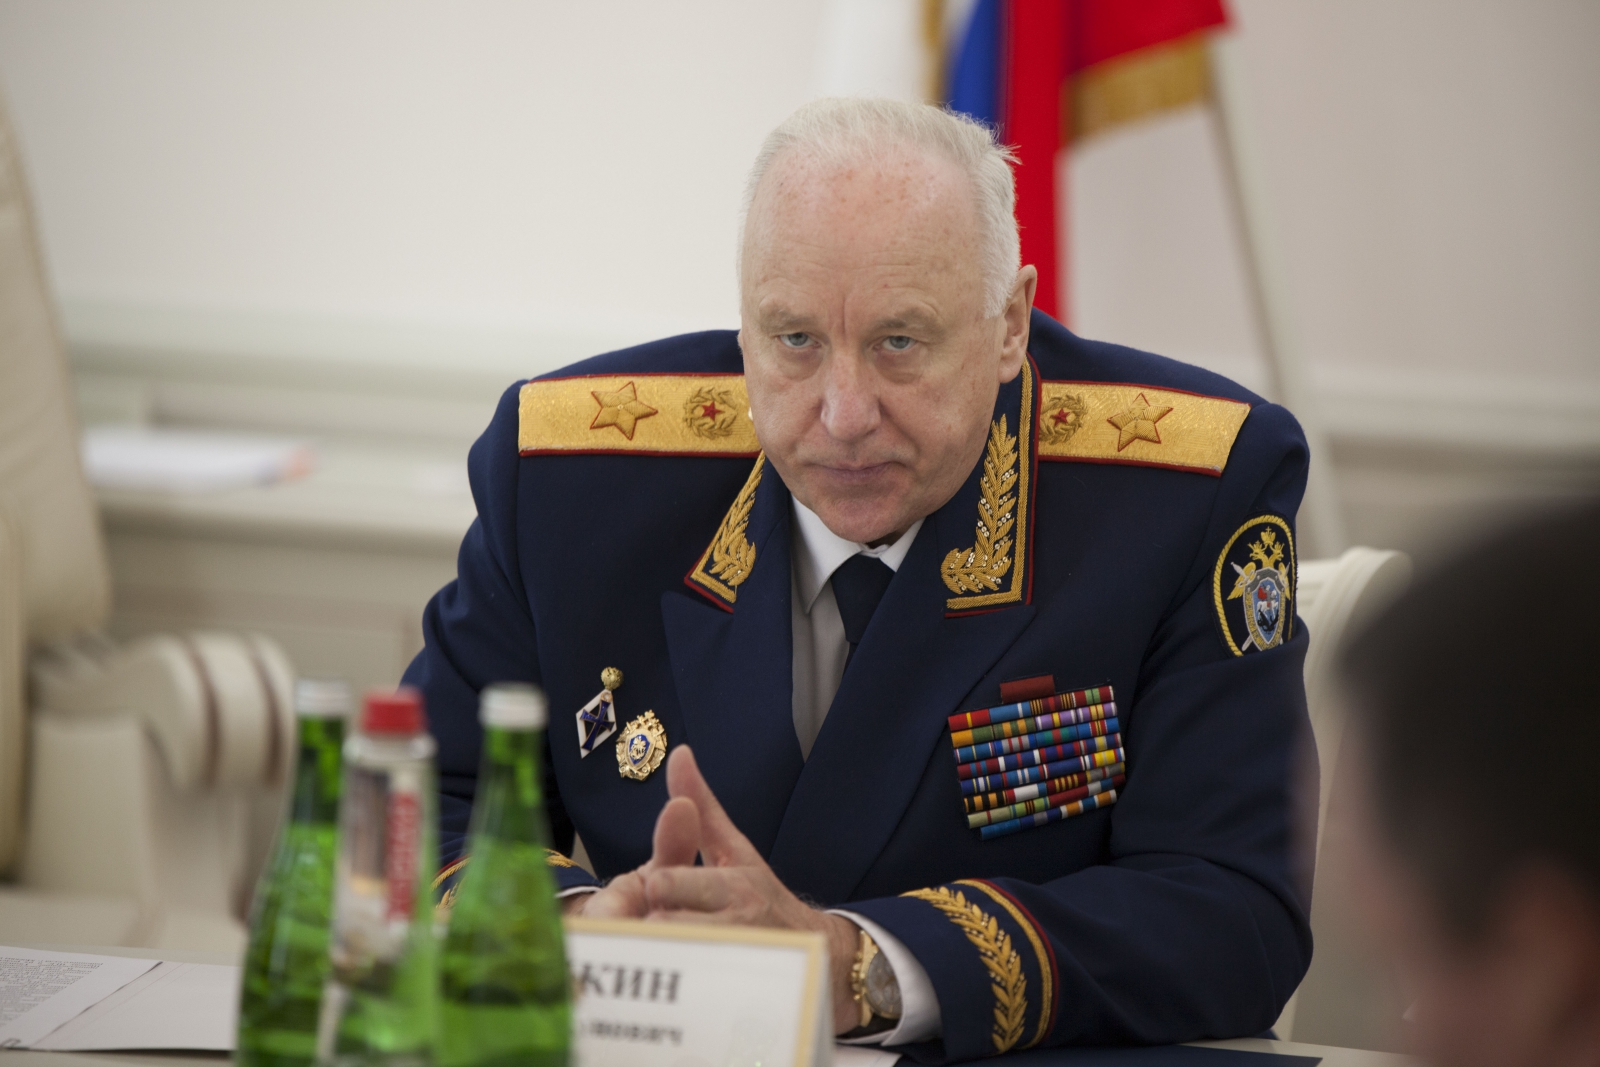 Глава комитета россии. Генерал юстиции Бастрыкин.